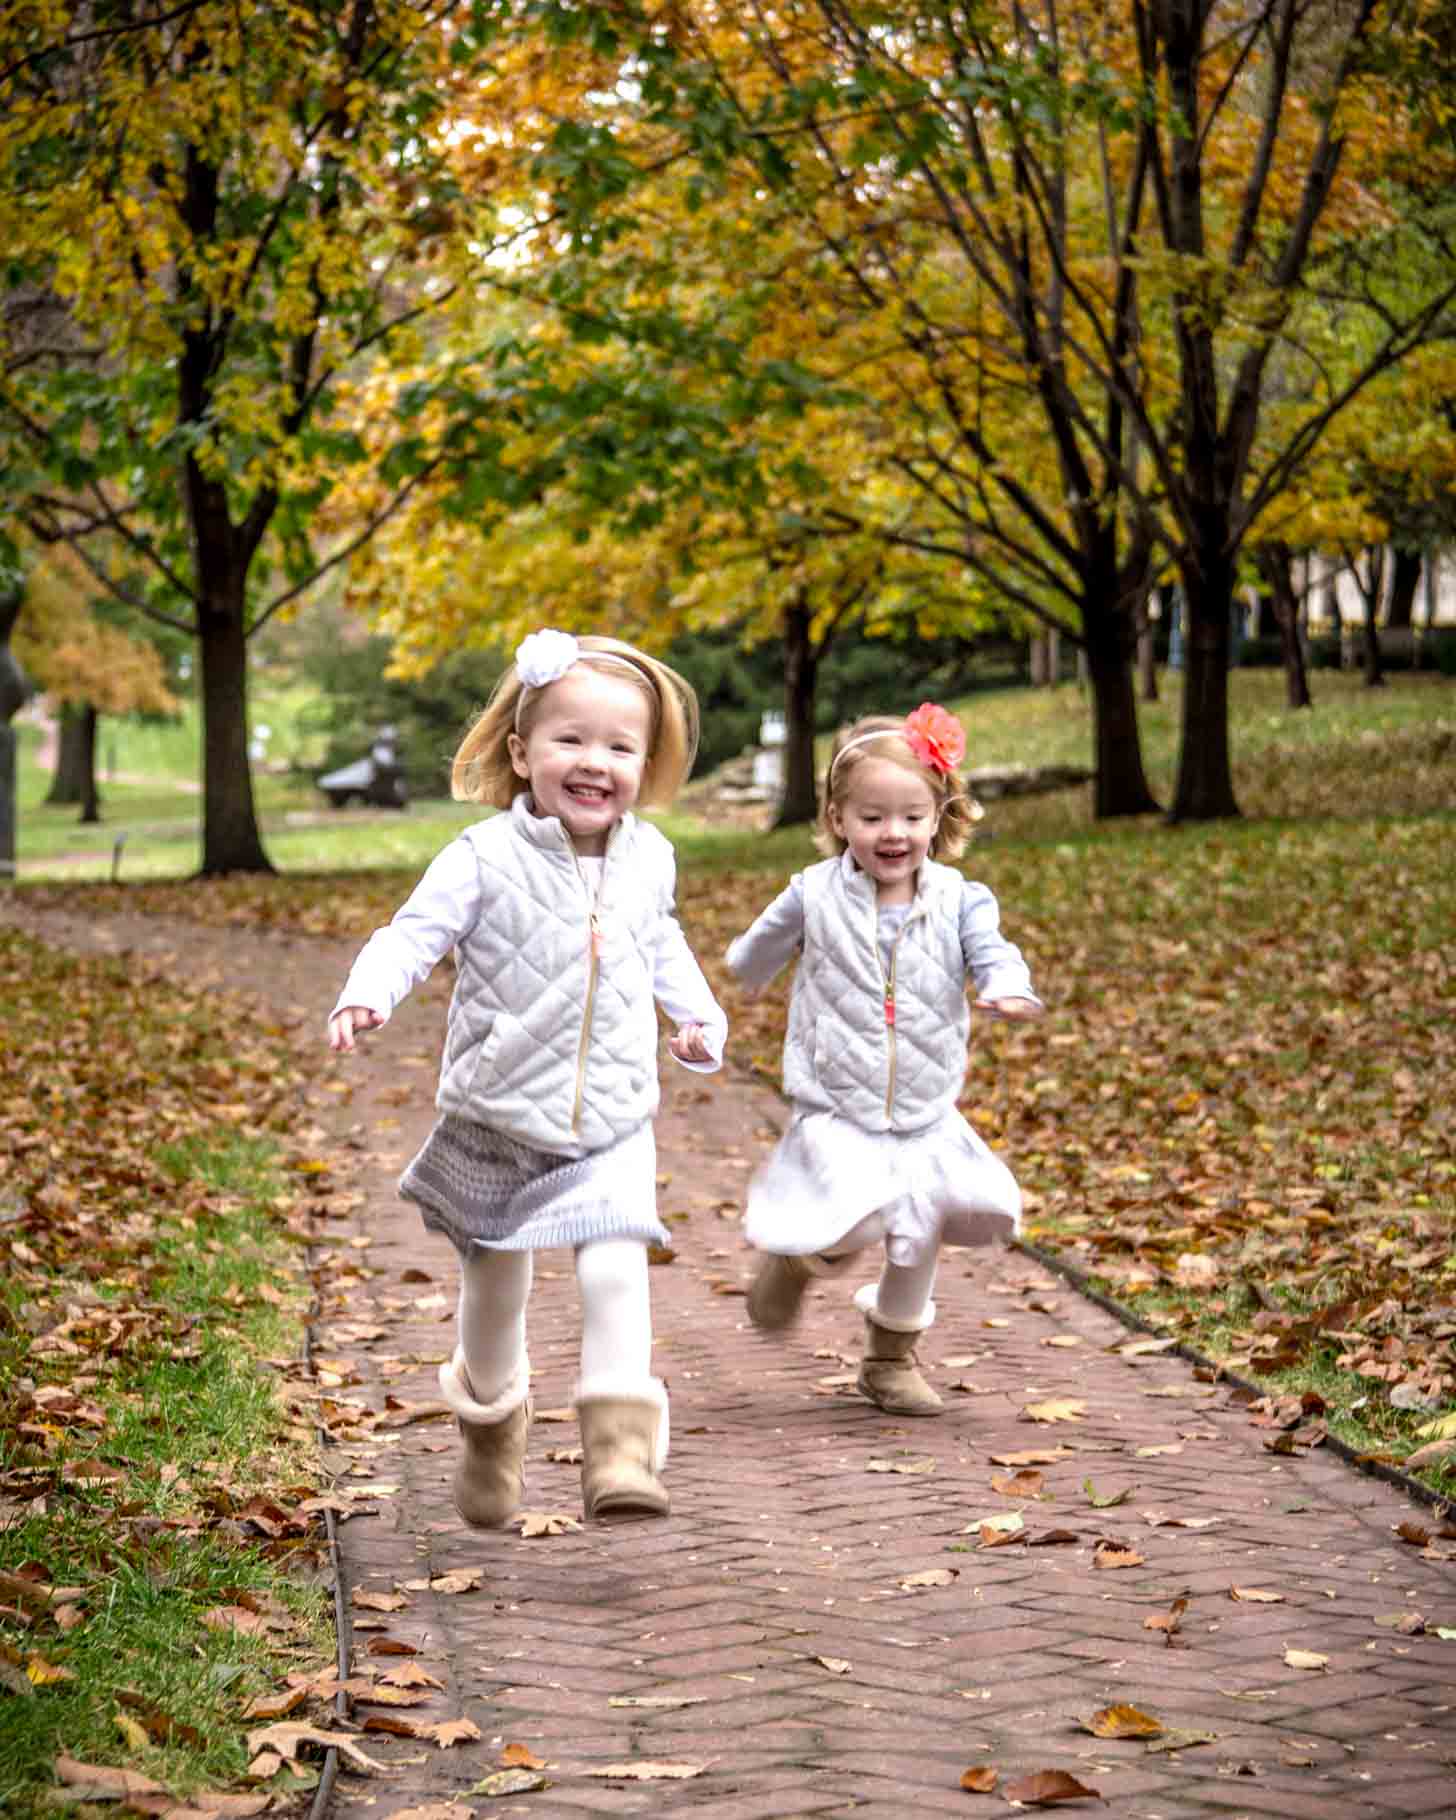 Molly and Clara running down sidewalk in fall